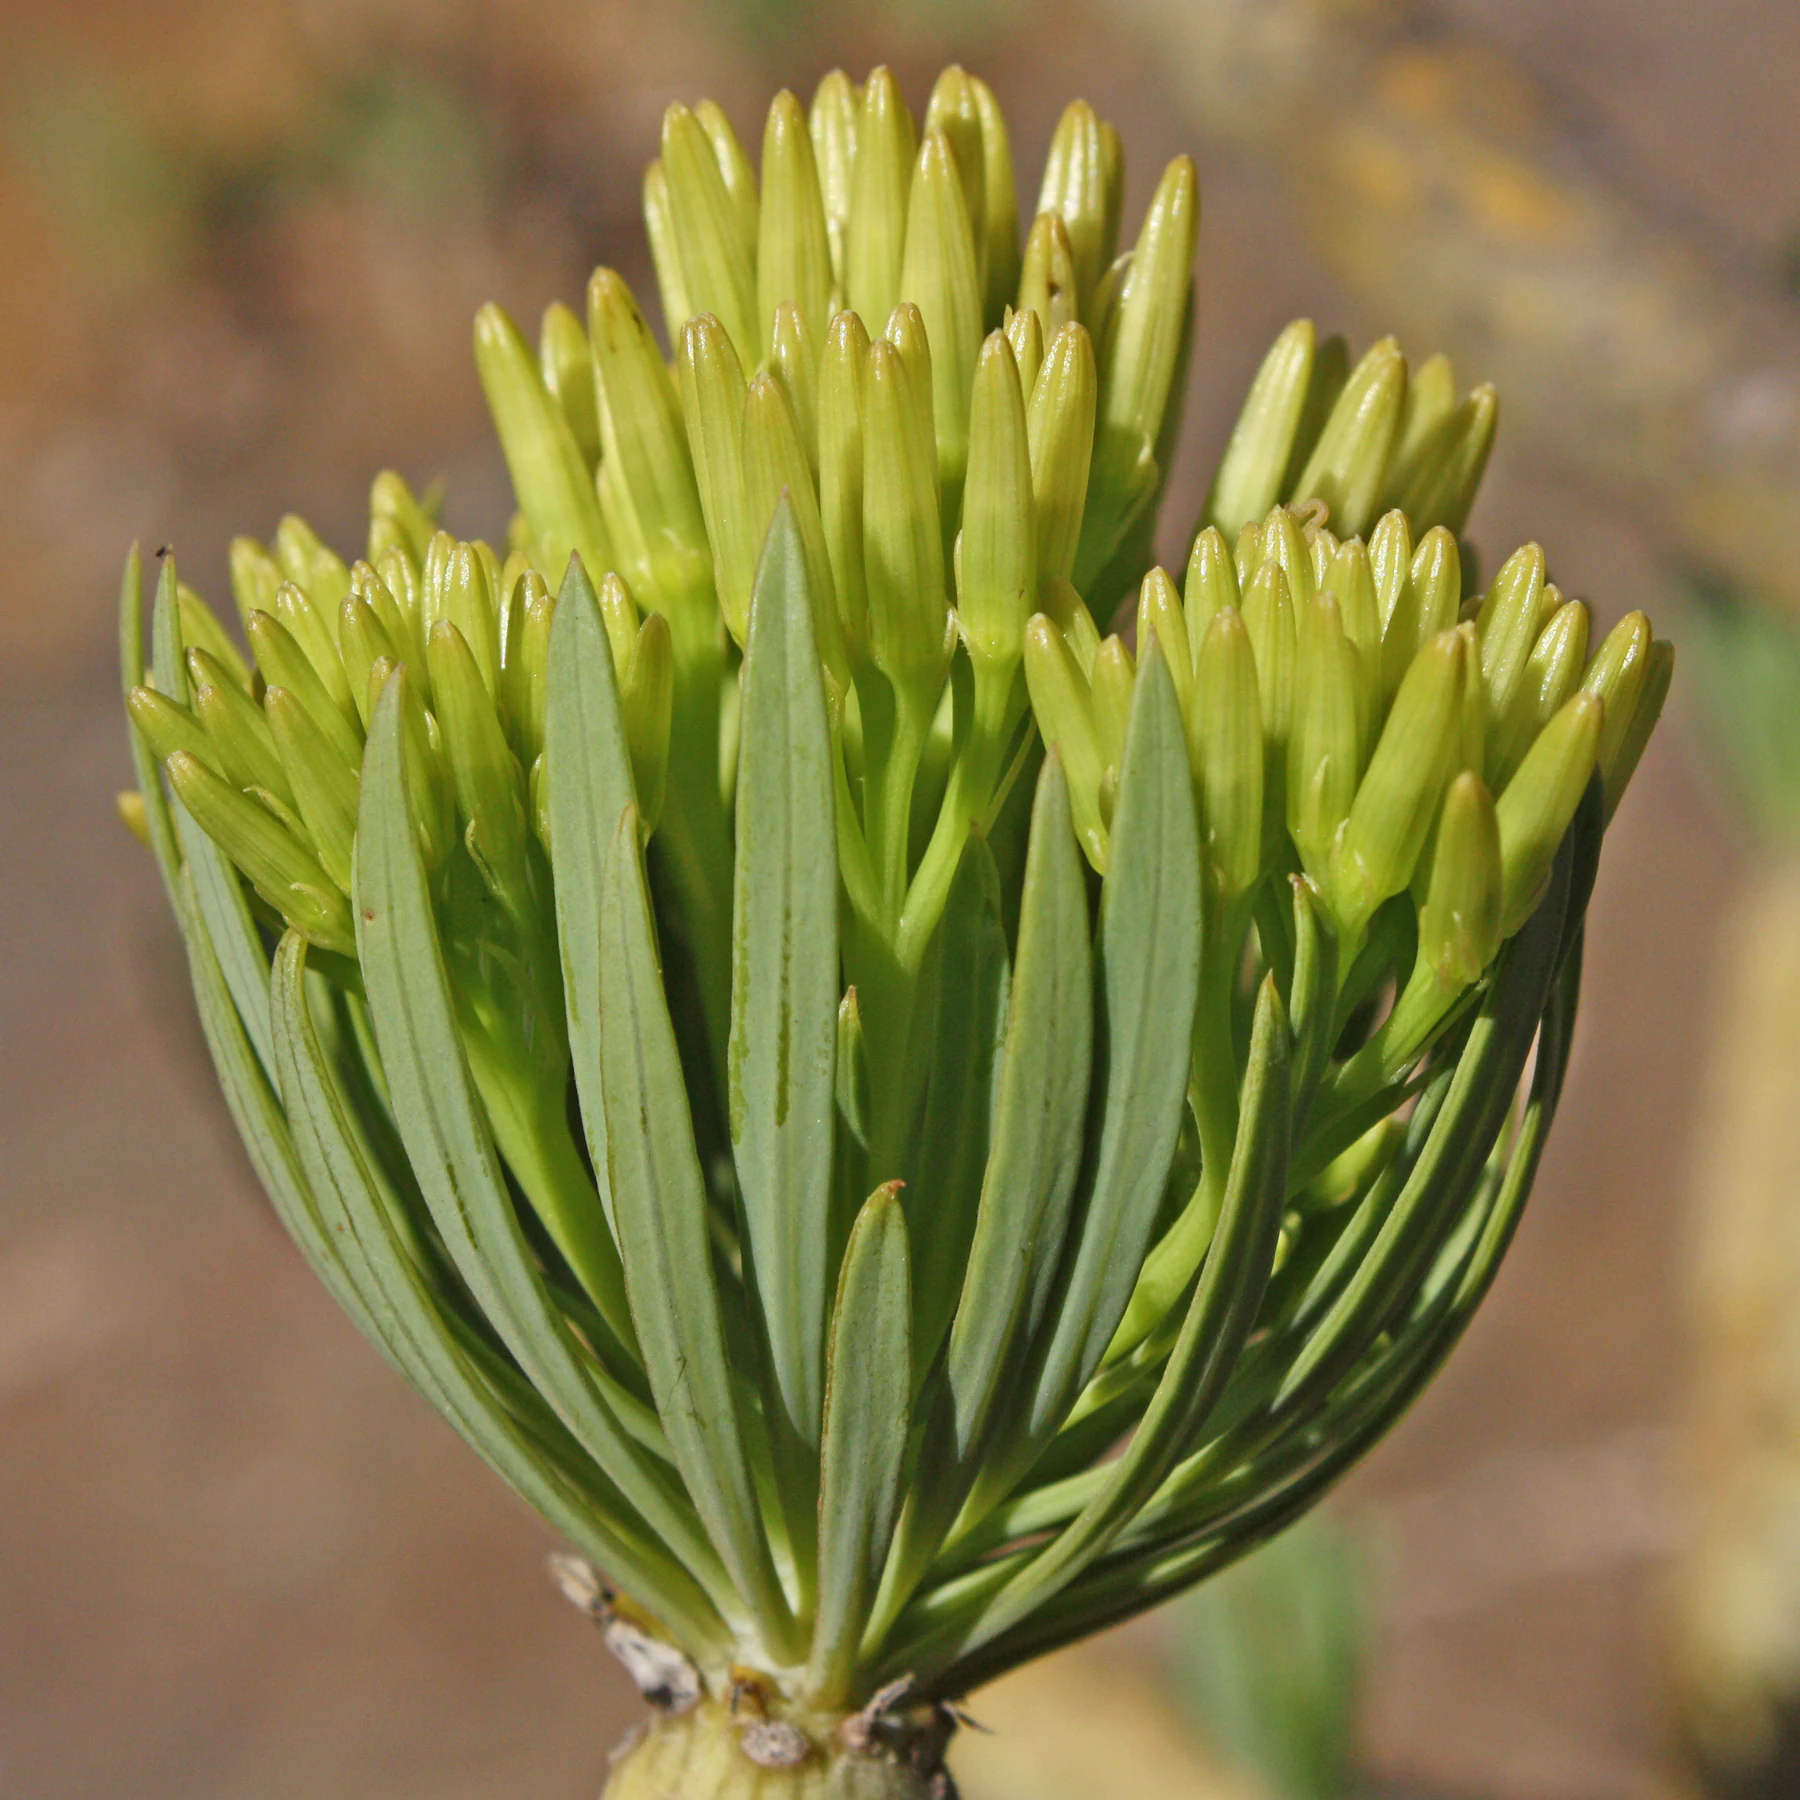 Los botones florales de Kleinia neriifolia